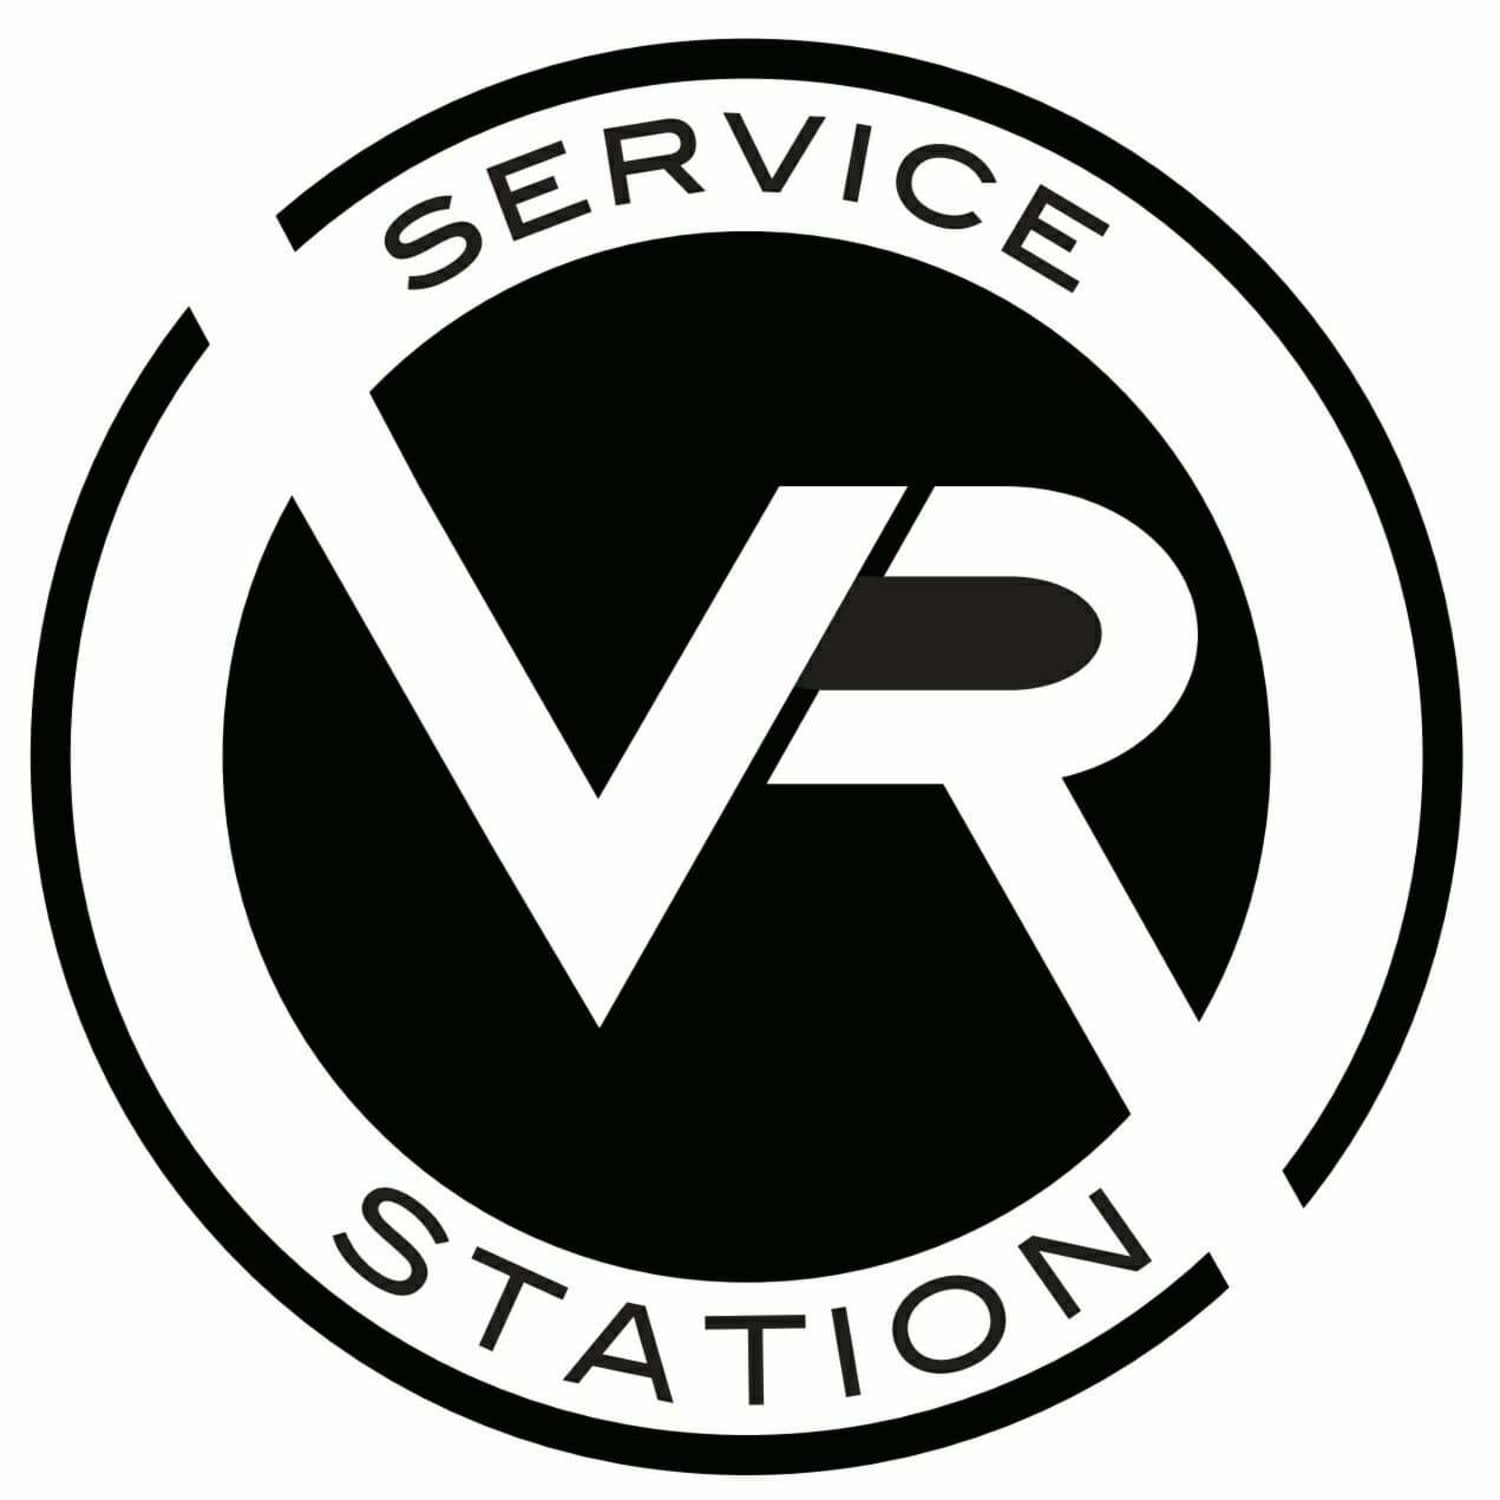 Vicarage Road Service Station